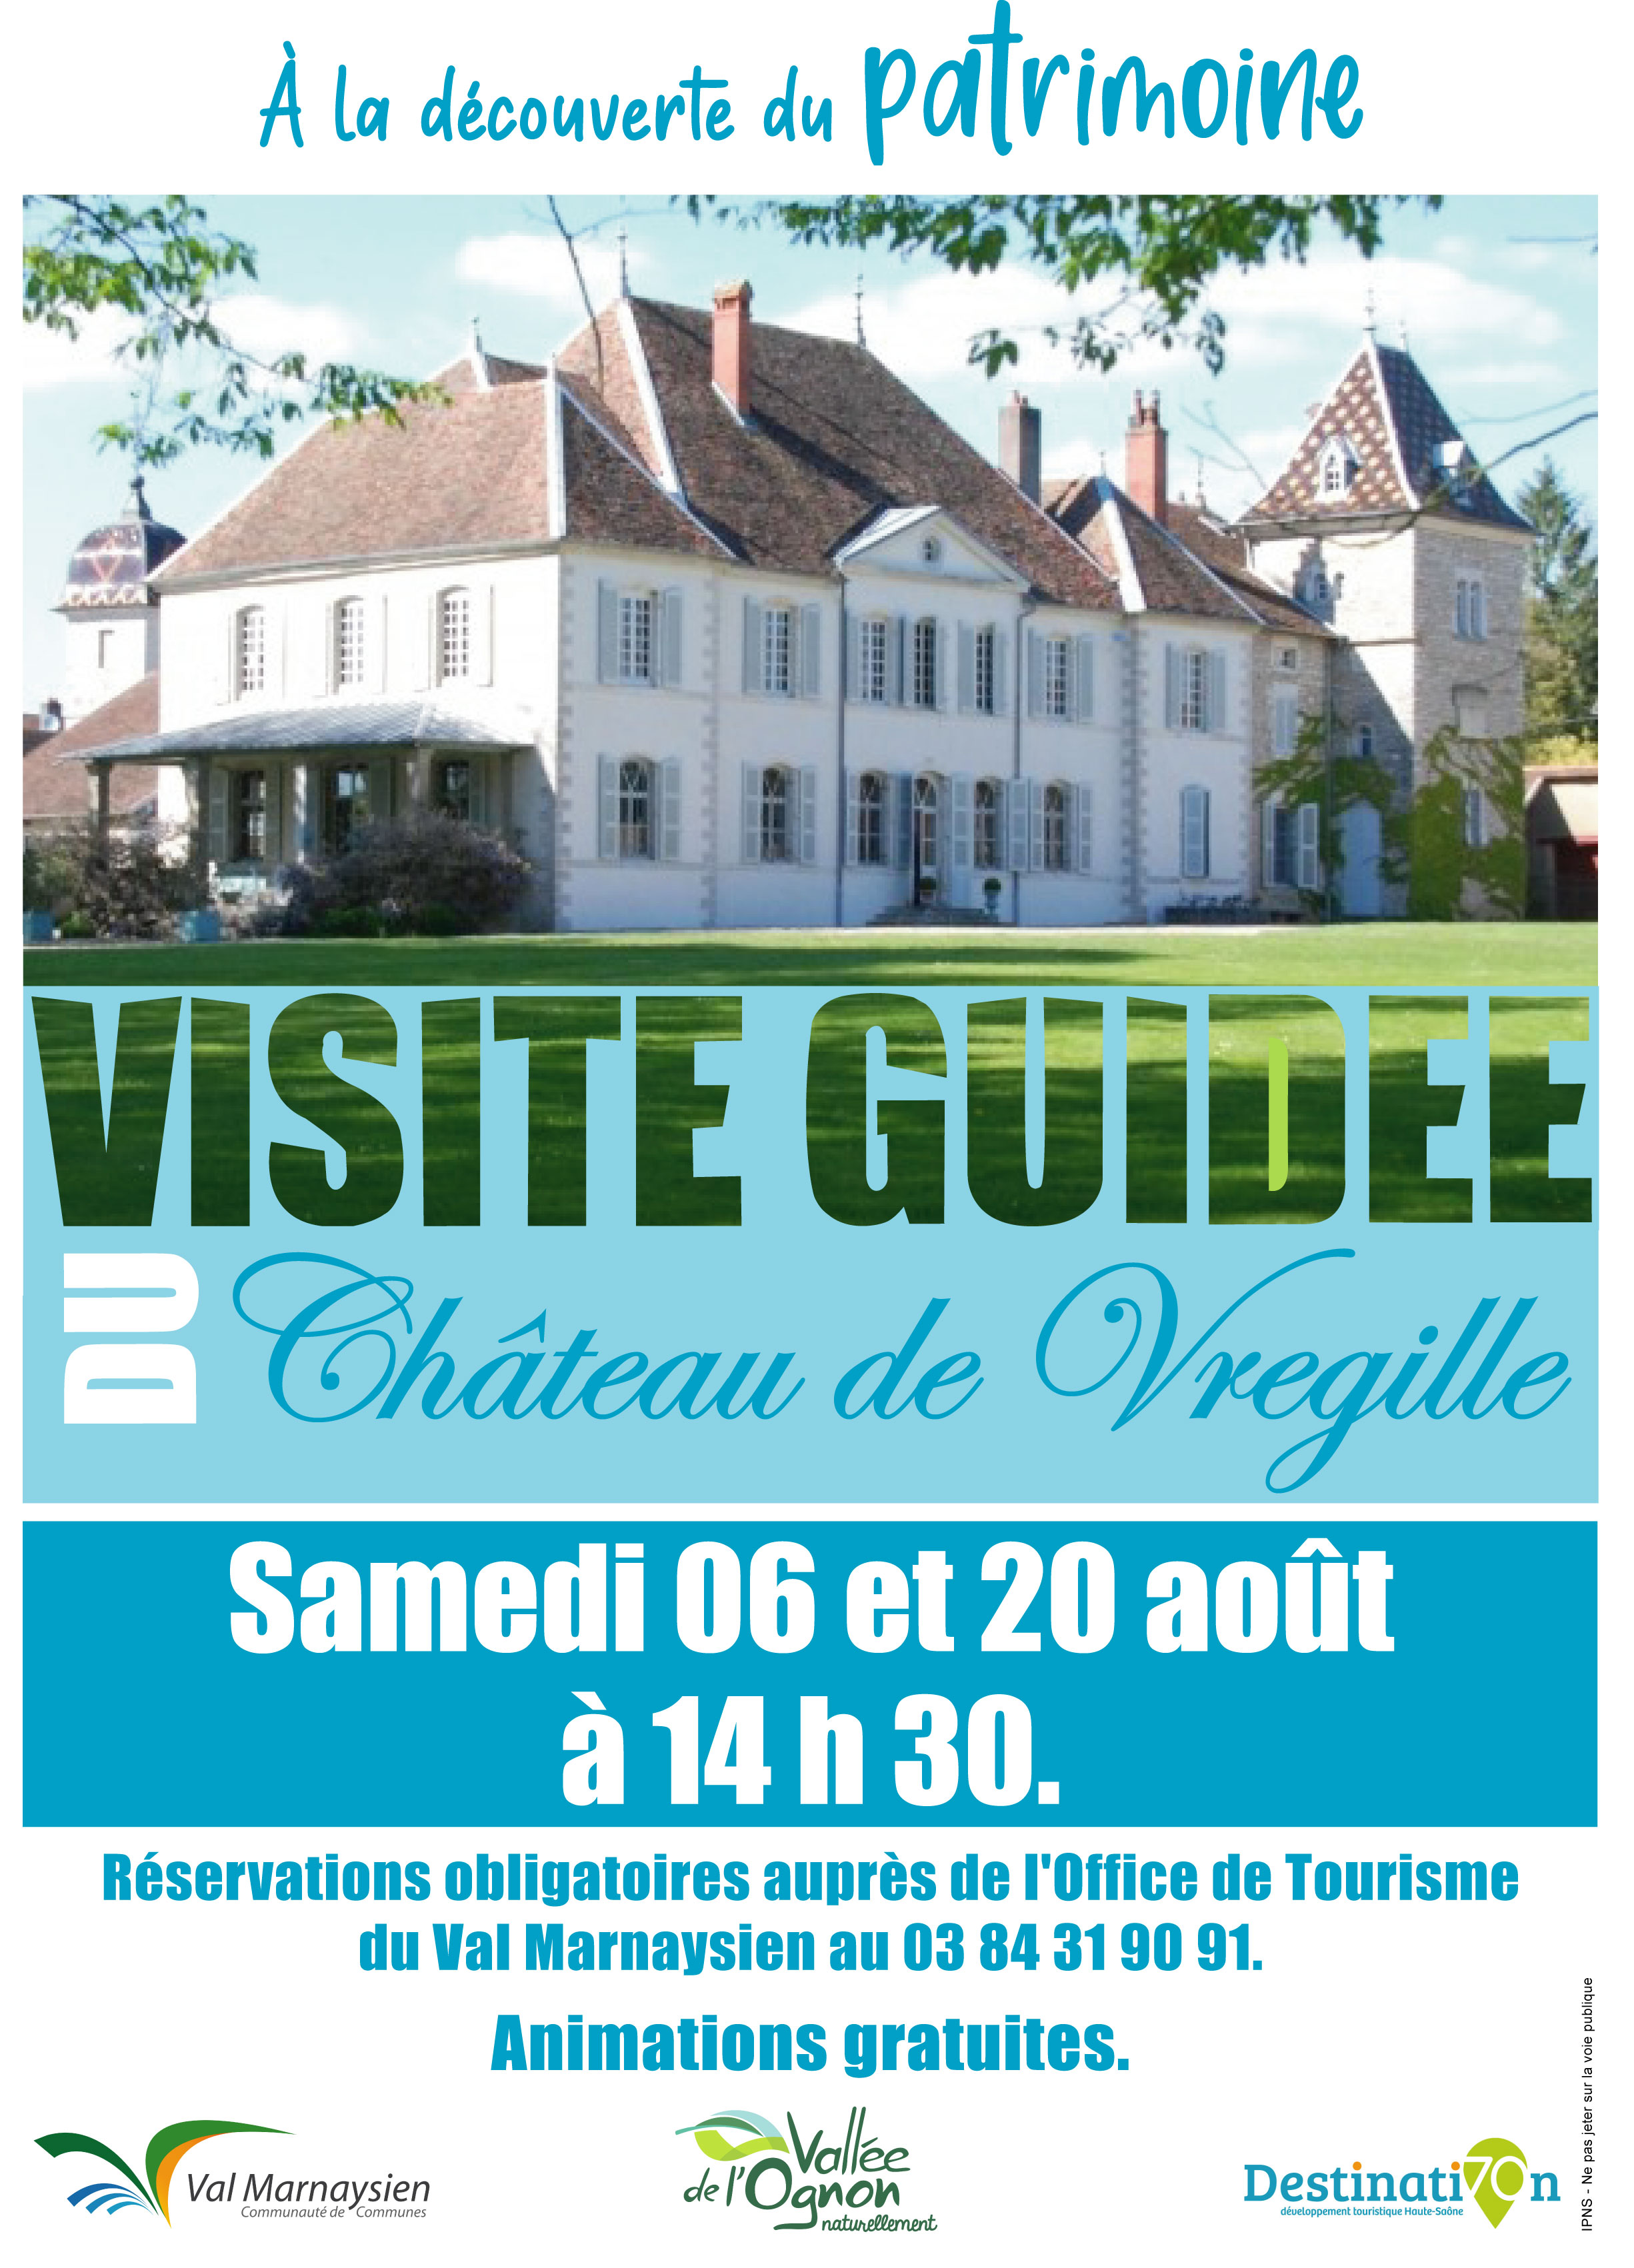 Visite guidée du Château de Vregille